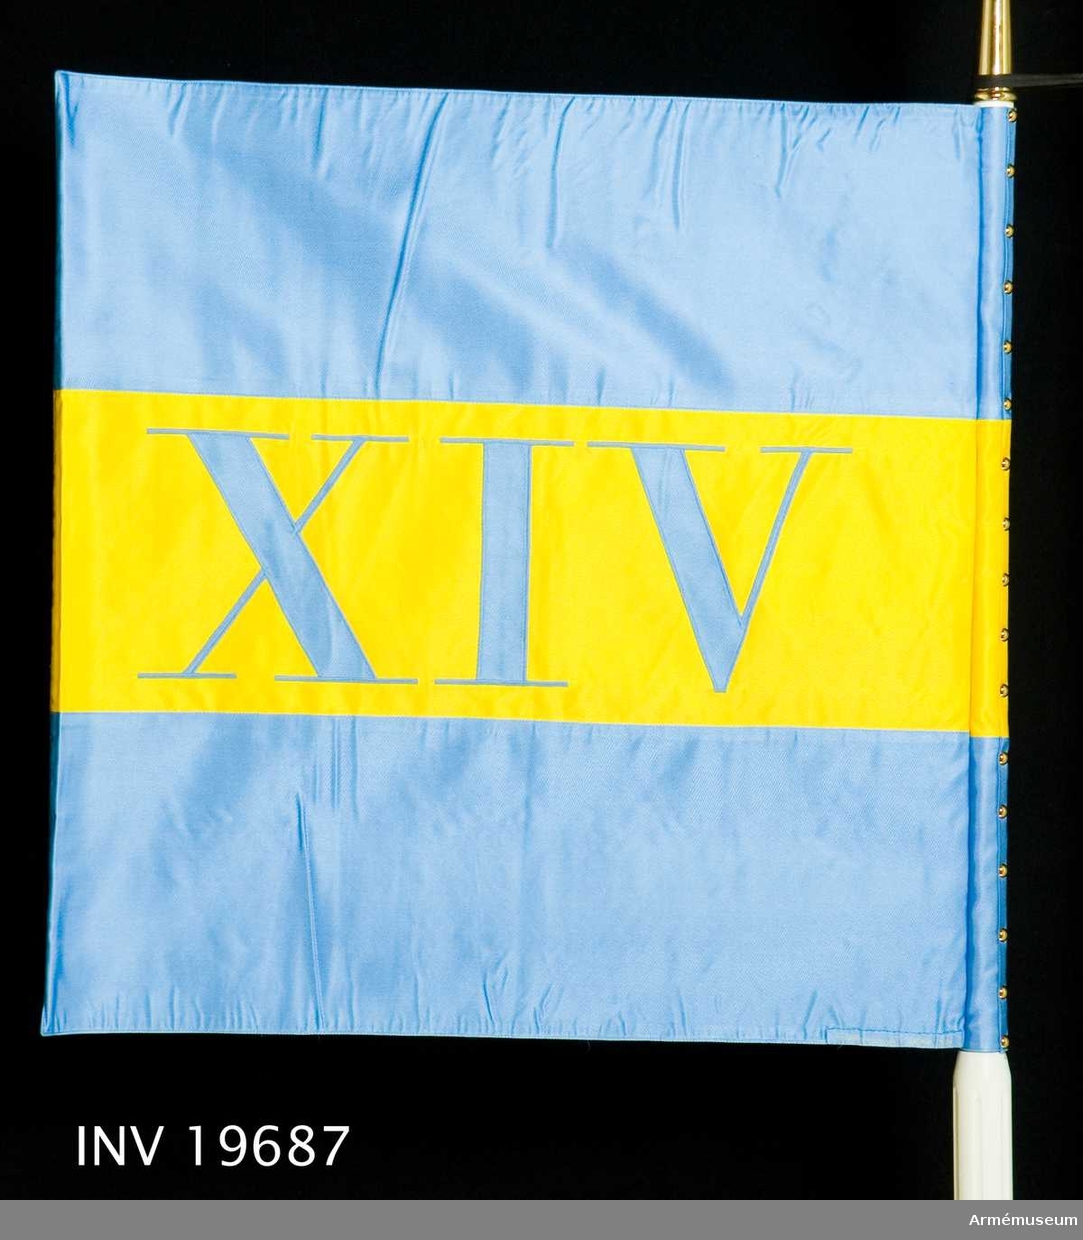 Standaret är maskinsytt och dubbelsidigt. Det har tre stycken 220 mm breda våder i blått, gult, blått. I mitten av det gula fältet finns de romerska siffrorna XIV. 

Samhörande nr AM 19687, AM 19688, standar, spets.